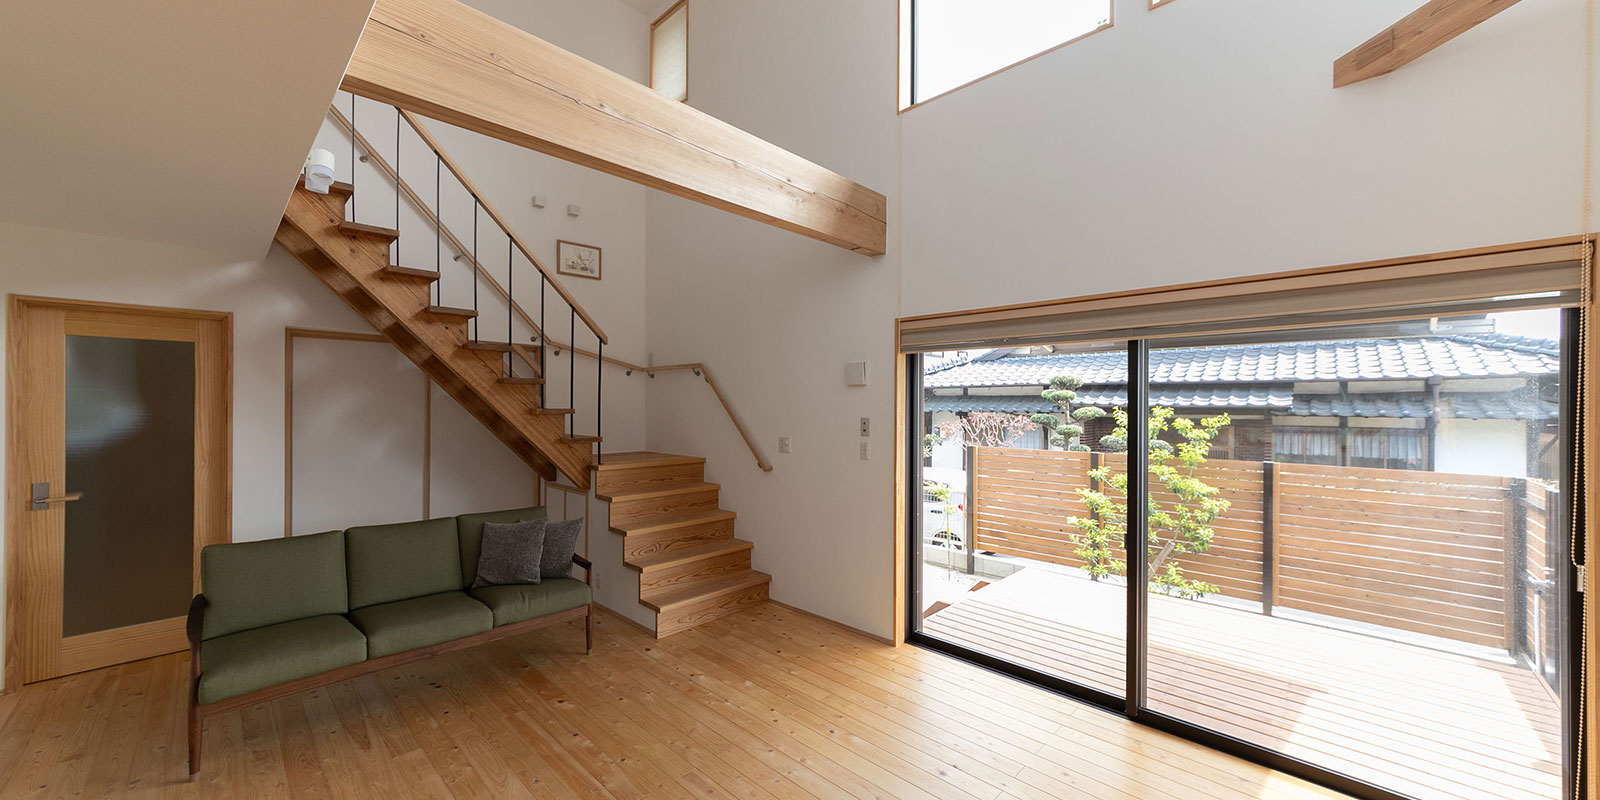 大きな吹き抜けのリビングとストリップ階段のある暮らし 熊本市北区 施工事例 熊本の新築一戸建て注文住宅 新産住拓